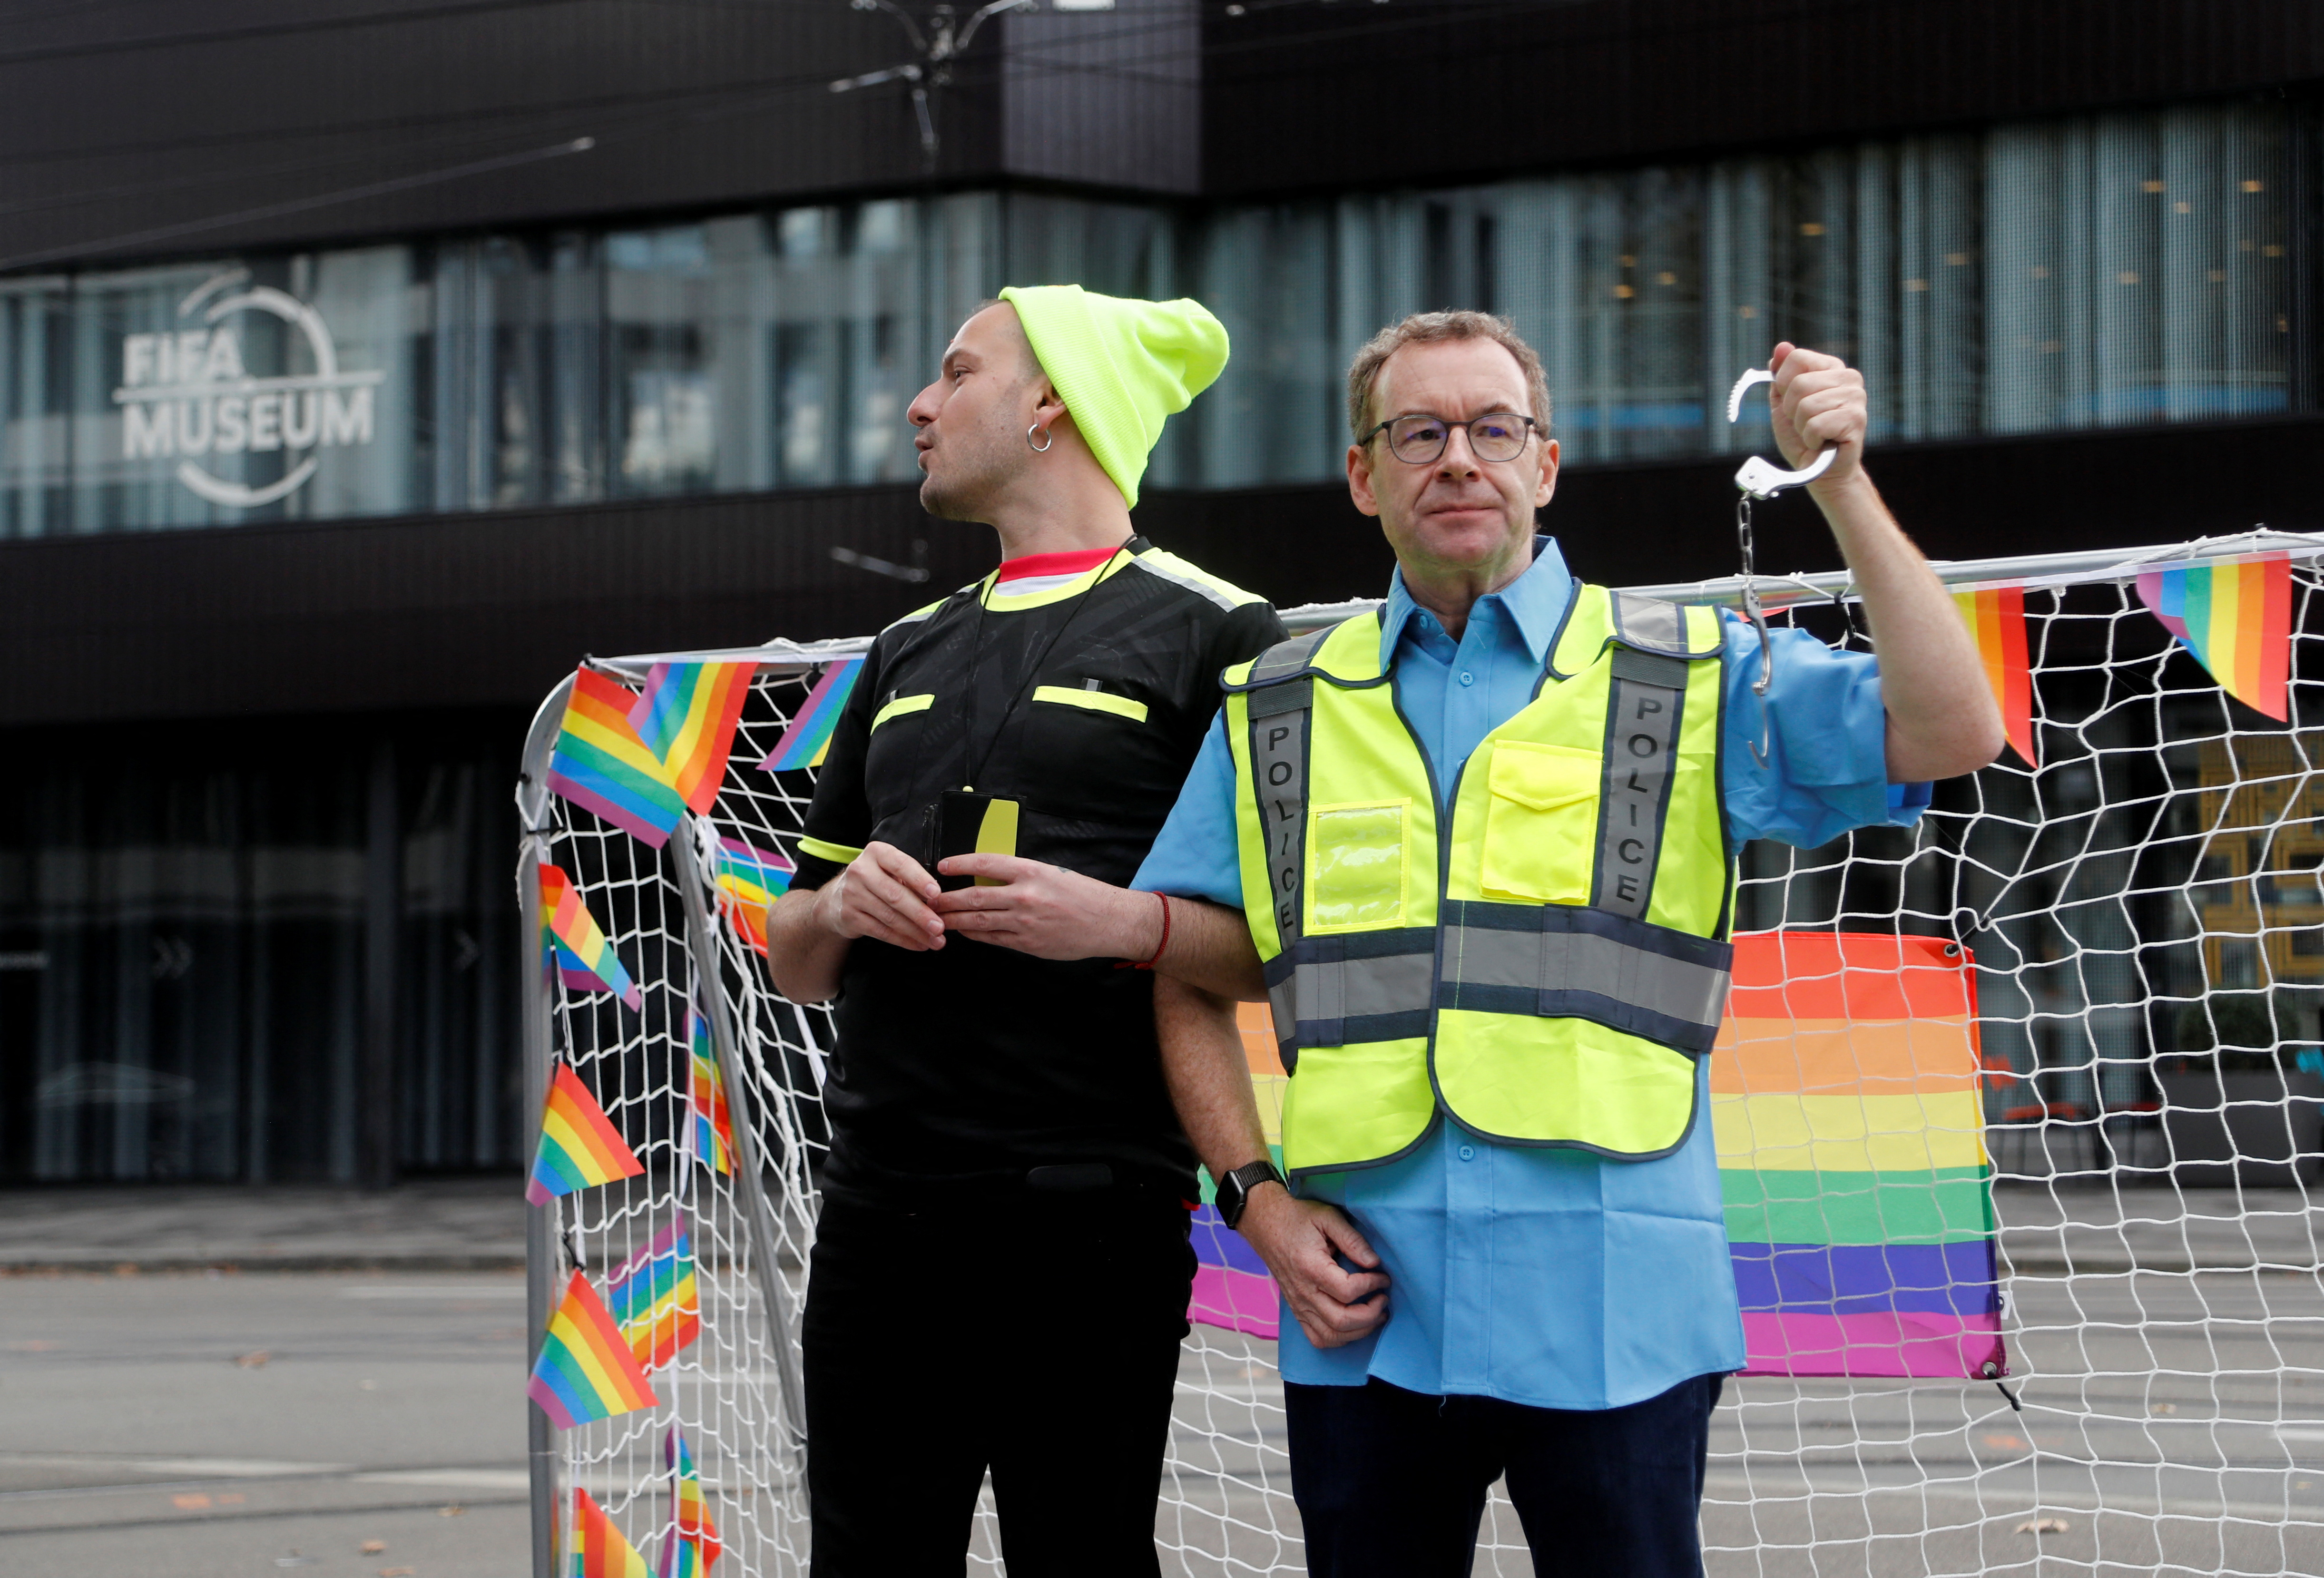 Los participantes se hacen pasar por una protesta de las asociaciones LGBT+ frente al Museo del Fútbol Mundial de la FIFA, ya que Qatar albergará la Copa del Mundo de 2022, en Zúrich, Suiza, el 8 de noviembre de 2022. REUTERS/Arnd Wiegmann
